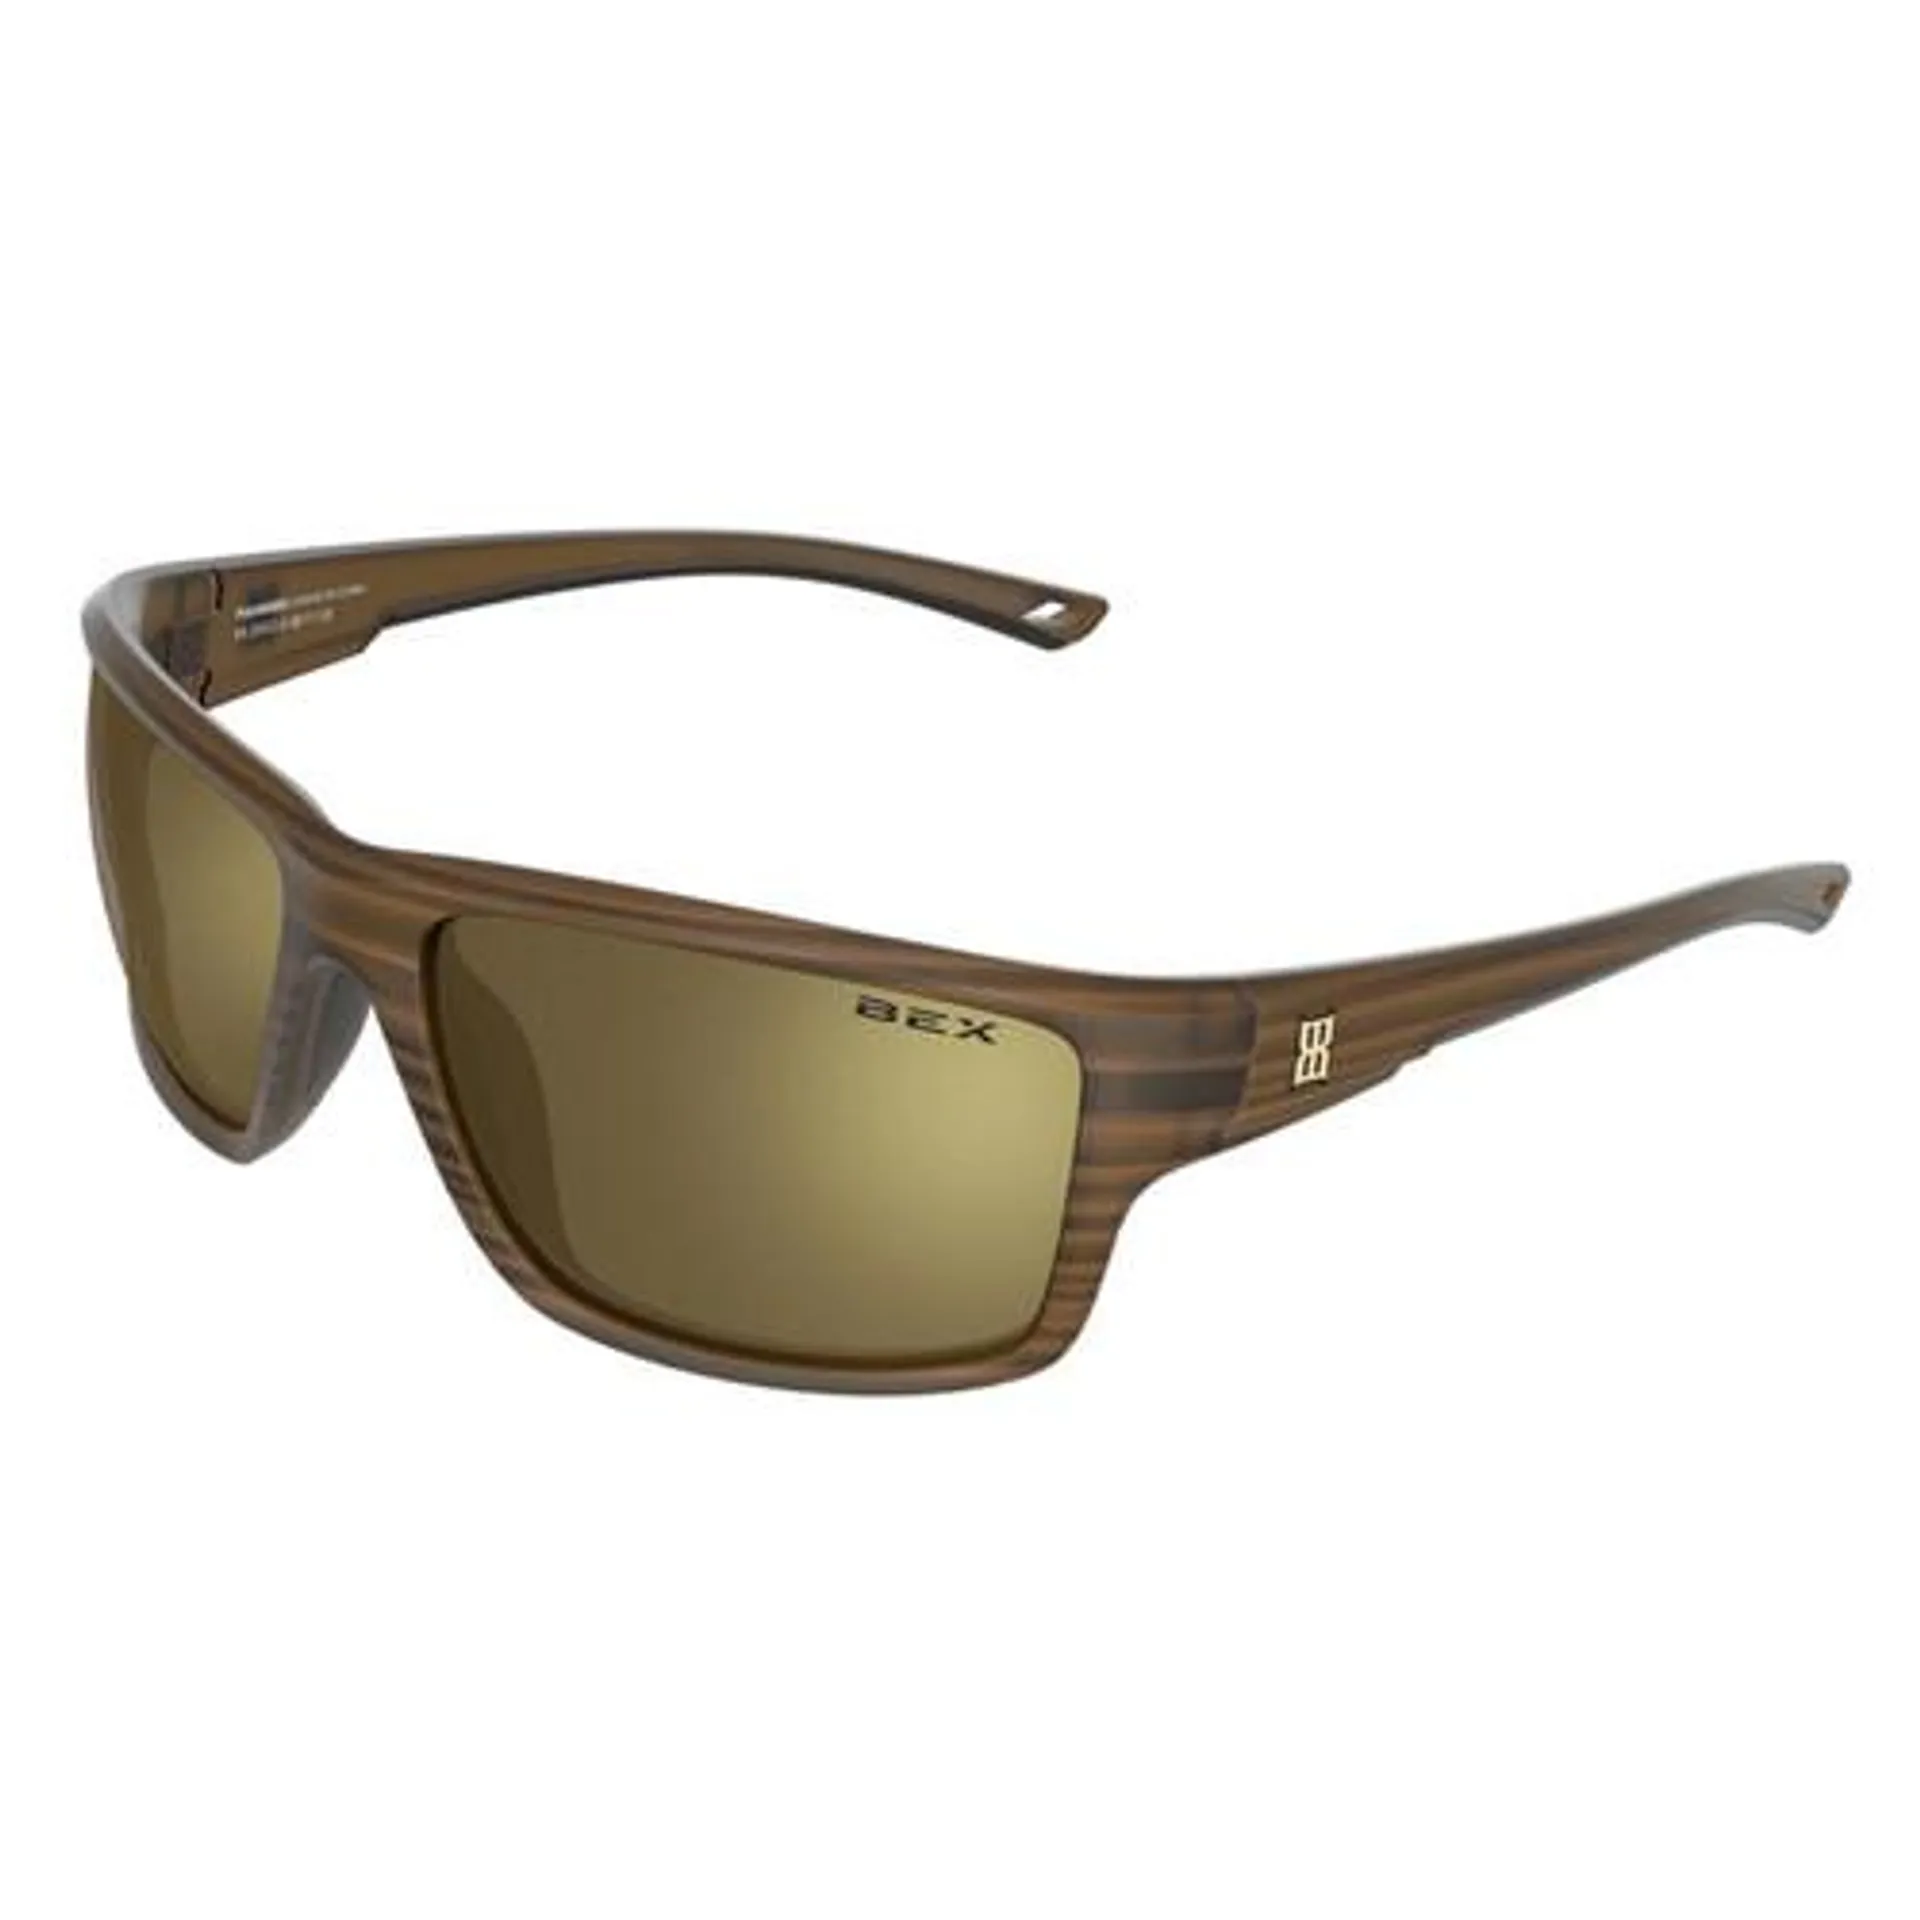 Bex Men's & Women's Crevalle Tortoise/Gold Sunglasses